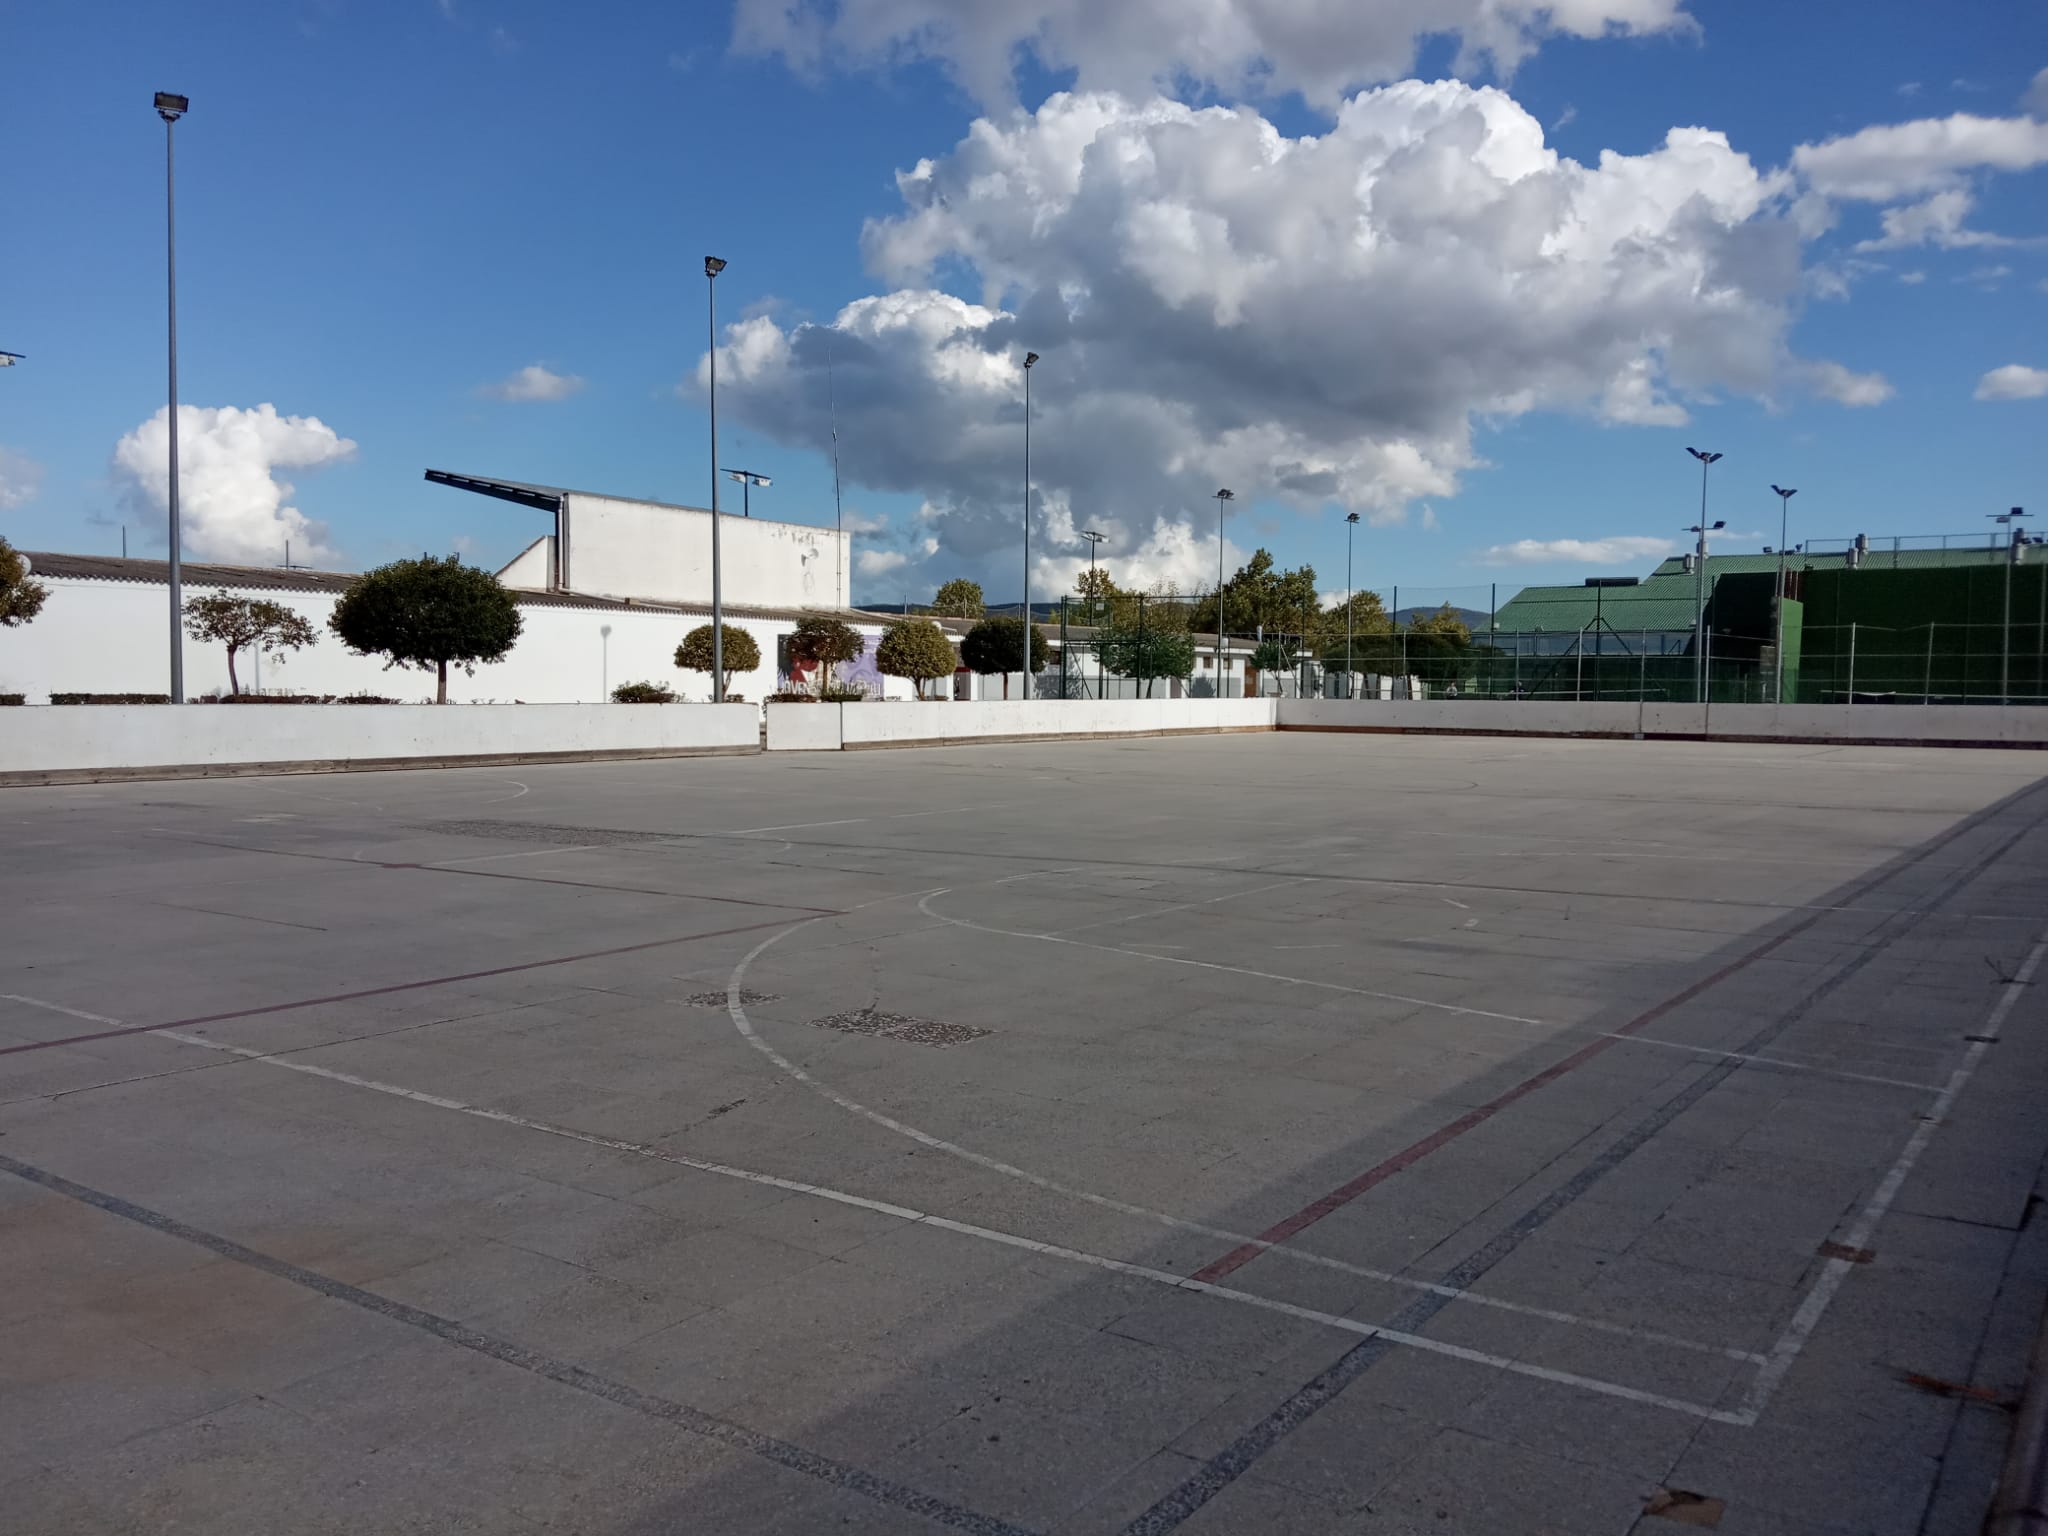 Polideportivo Municipal de Banyeres de Mariola